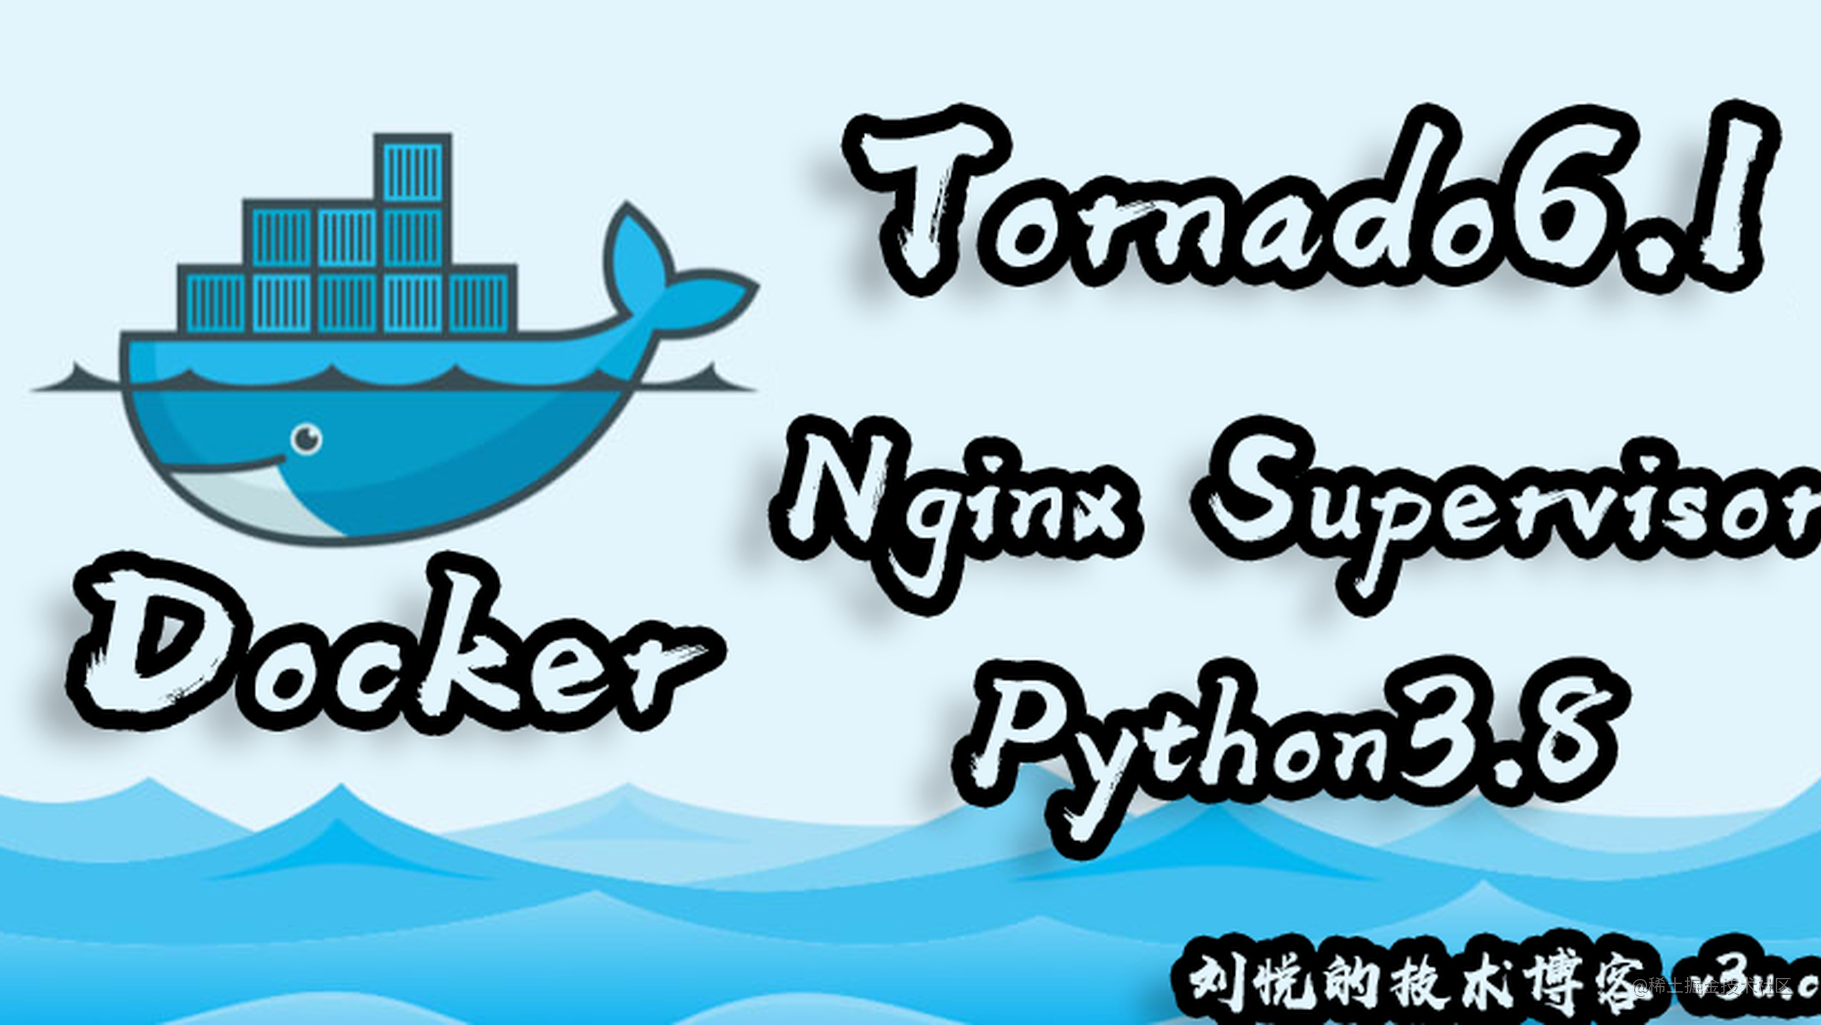 四位一体水溶交融,Docker一拖三Tornado6.2 + Nginx + Supervisord非阻塞负载均衡容器式部署实践